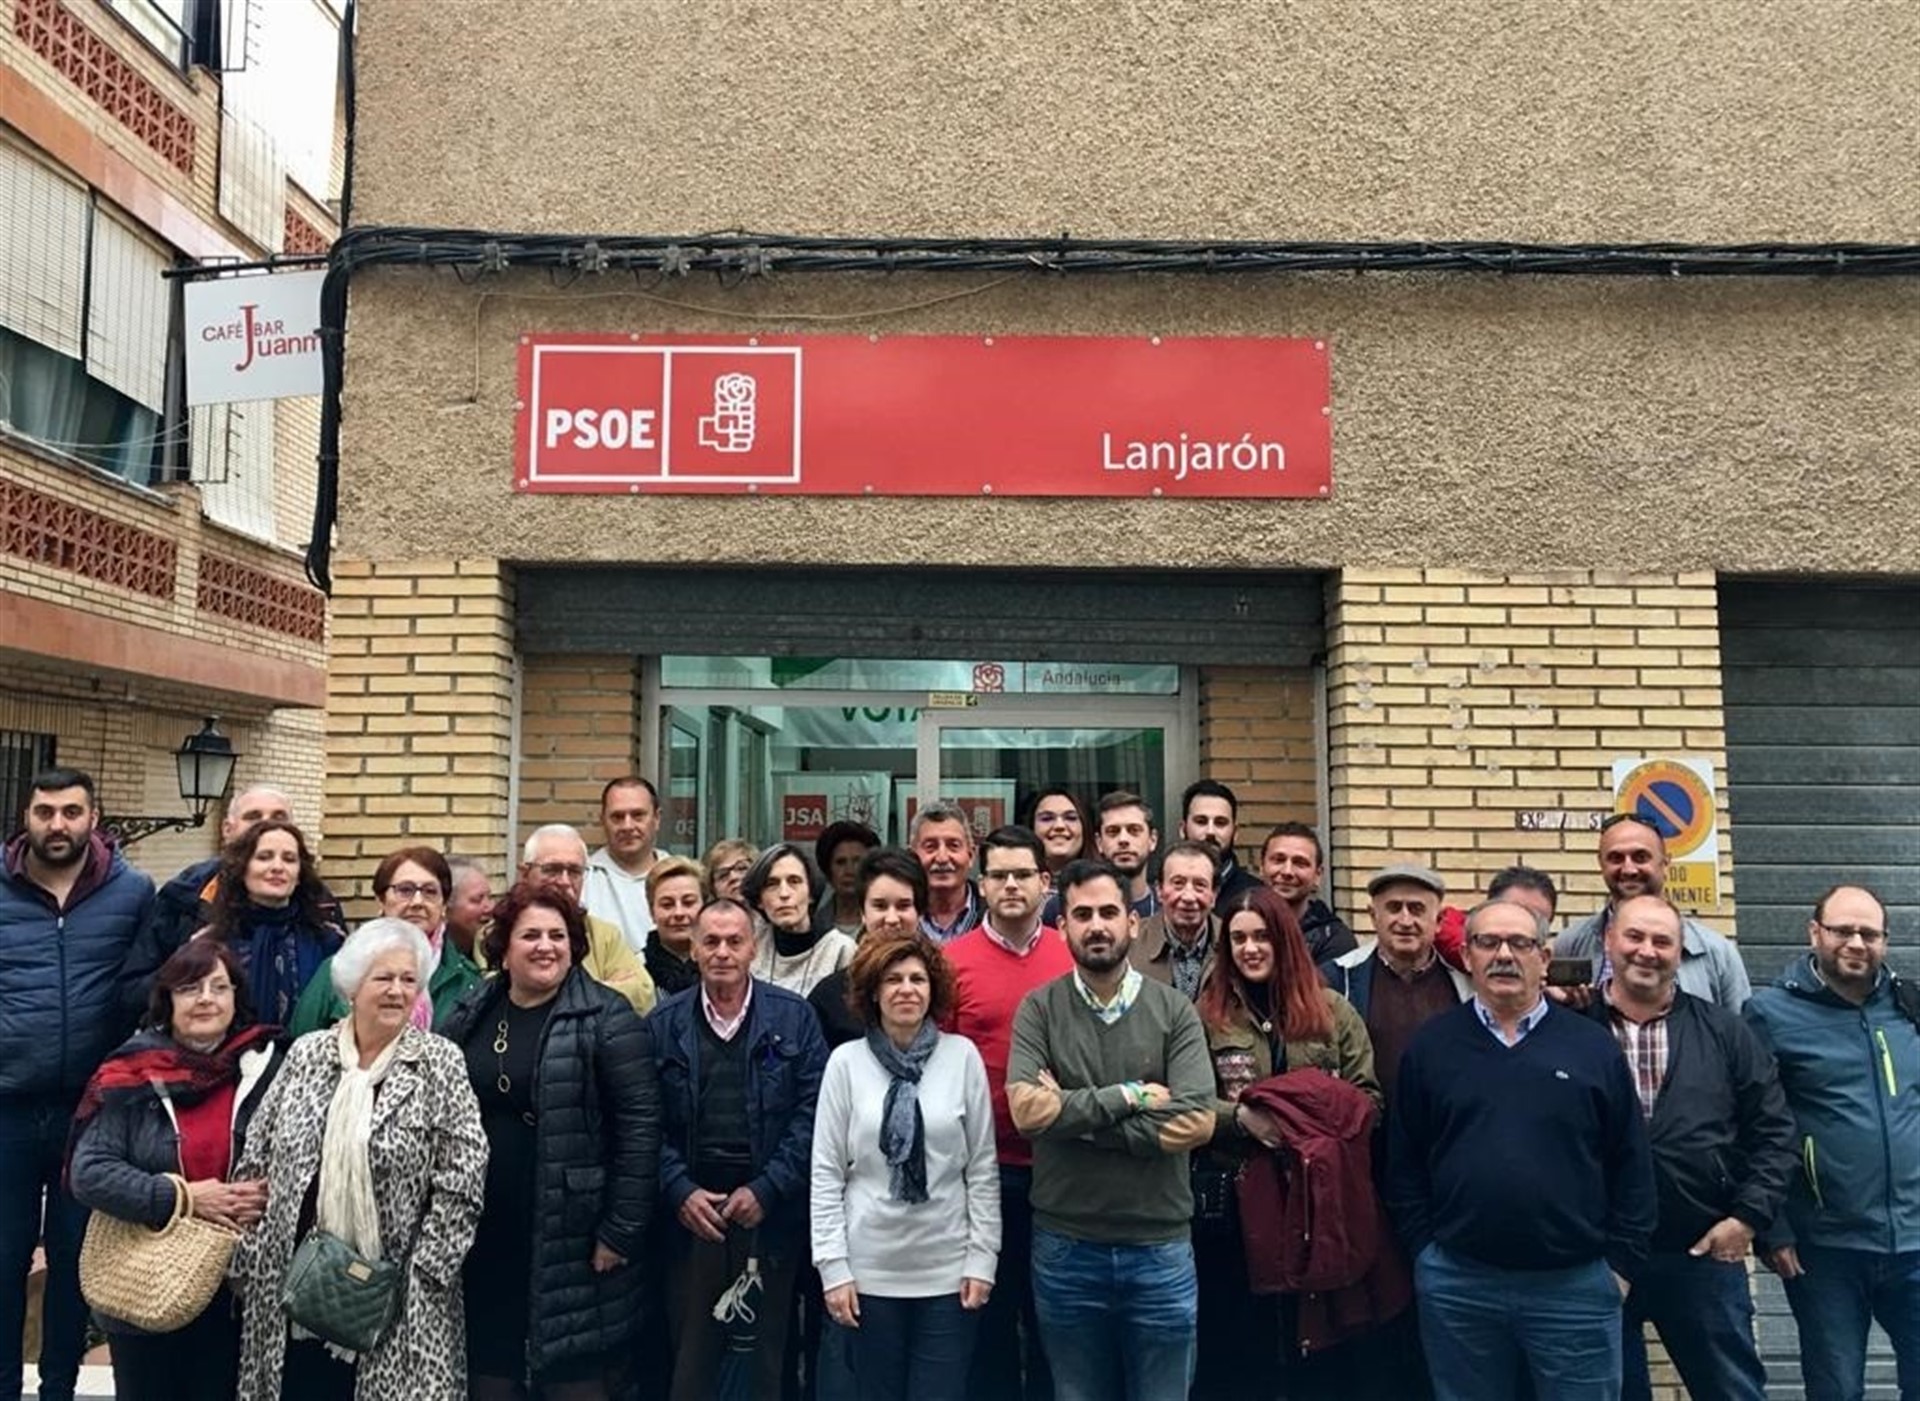 El historiador Raúl Ruiz encabezará la candidatura del PSOE en Lanjarón